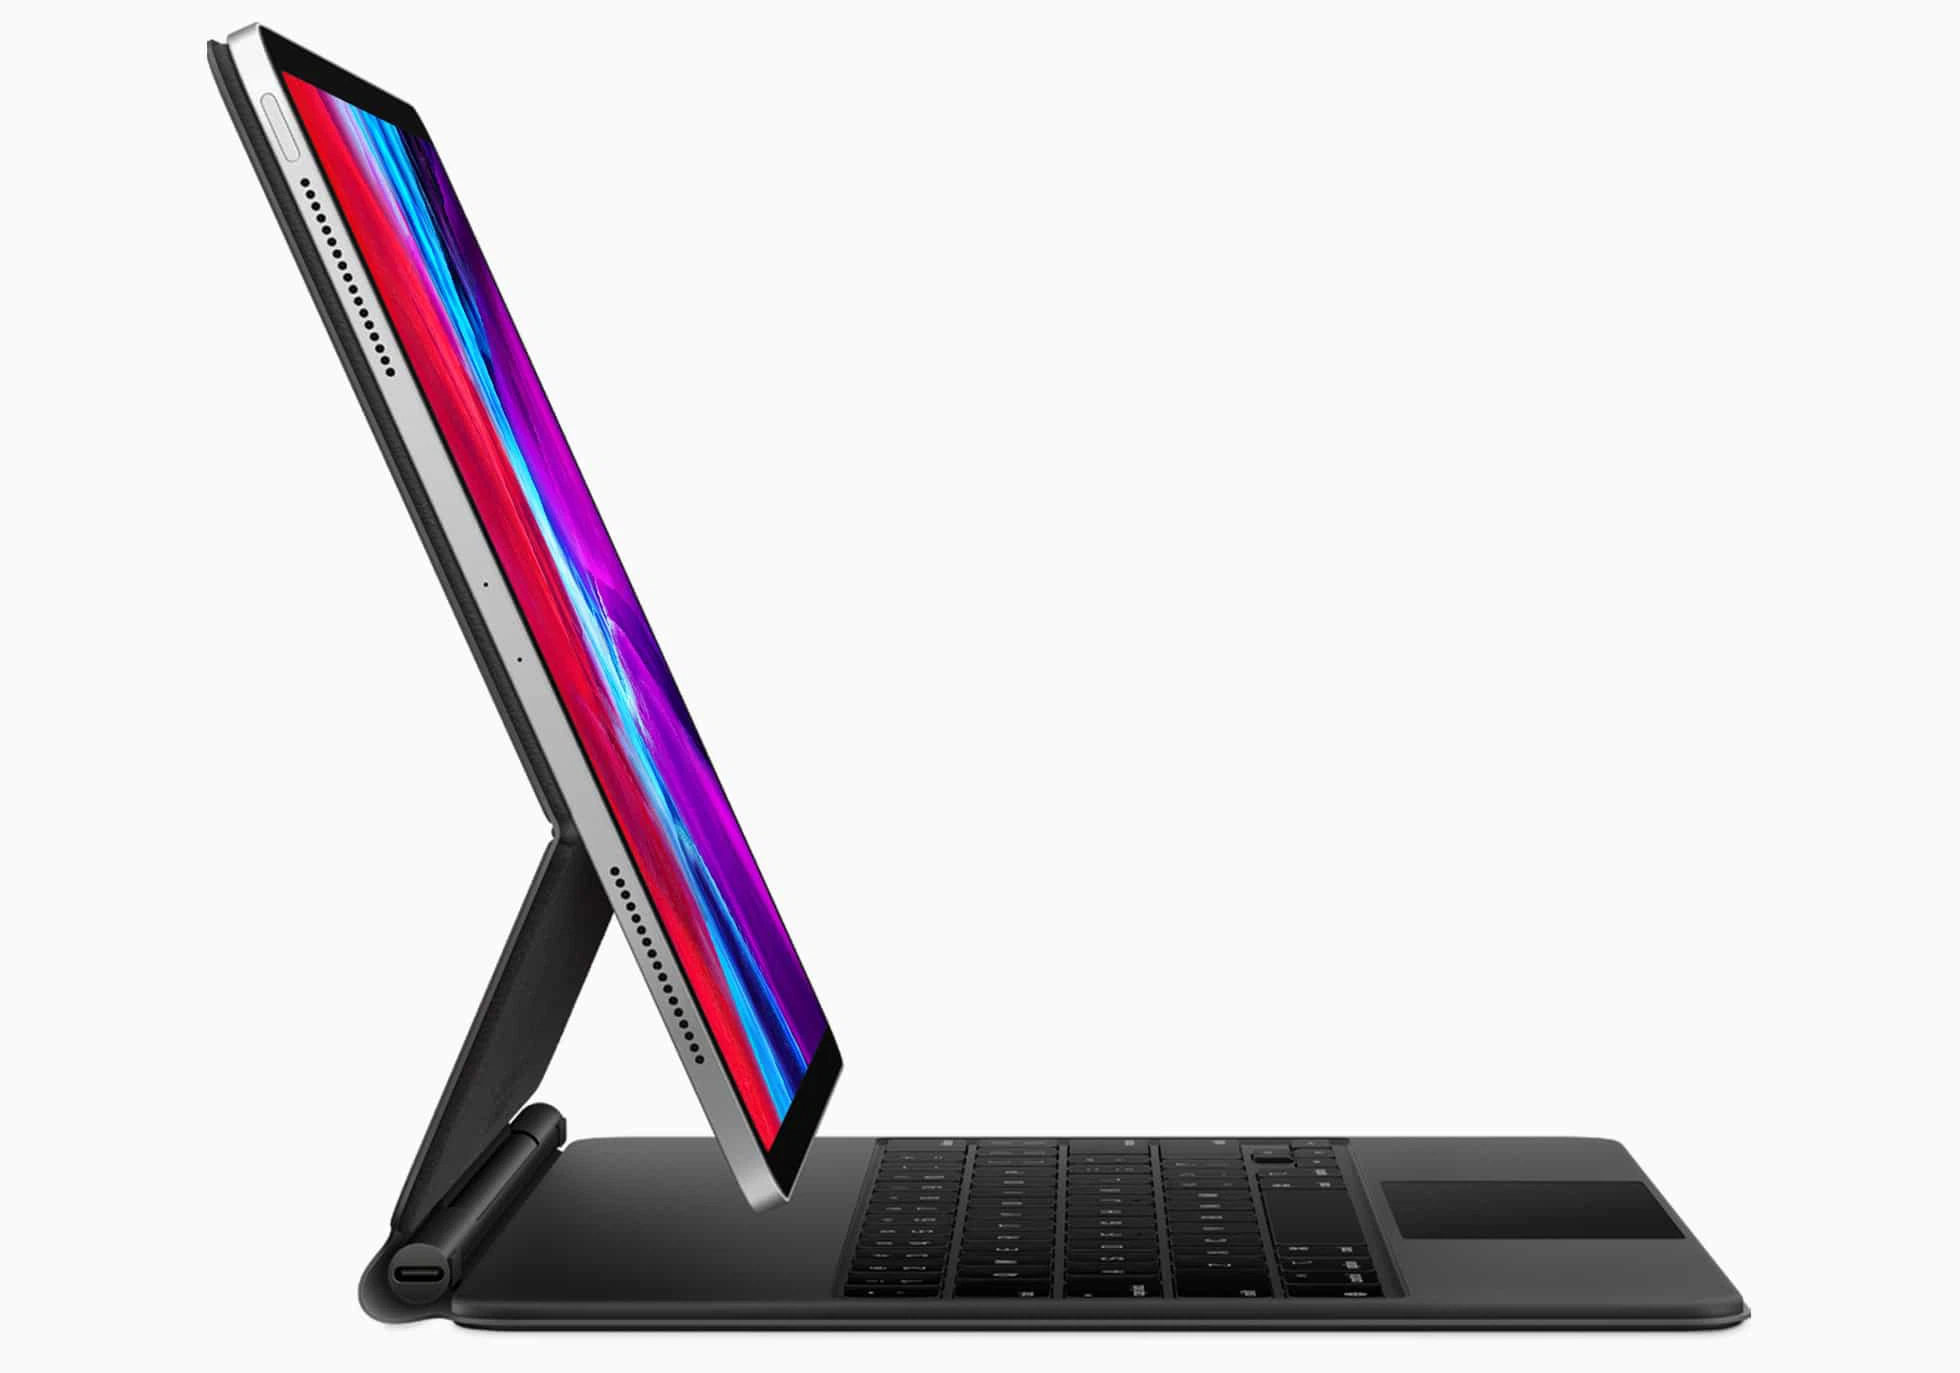 Apple sẽ ra mắt iPad Air màn hình OLED, MacBook Air màn hình mini-LED vào năm 2022 - Ảnh 1.